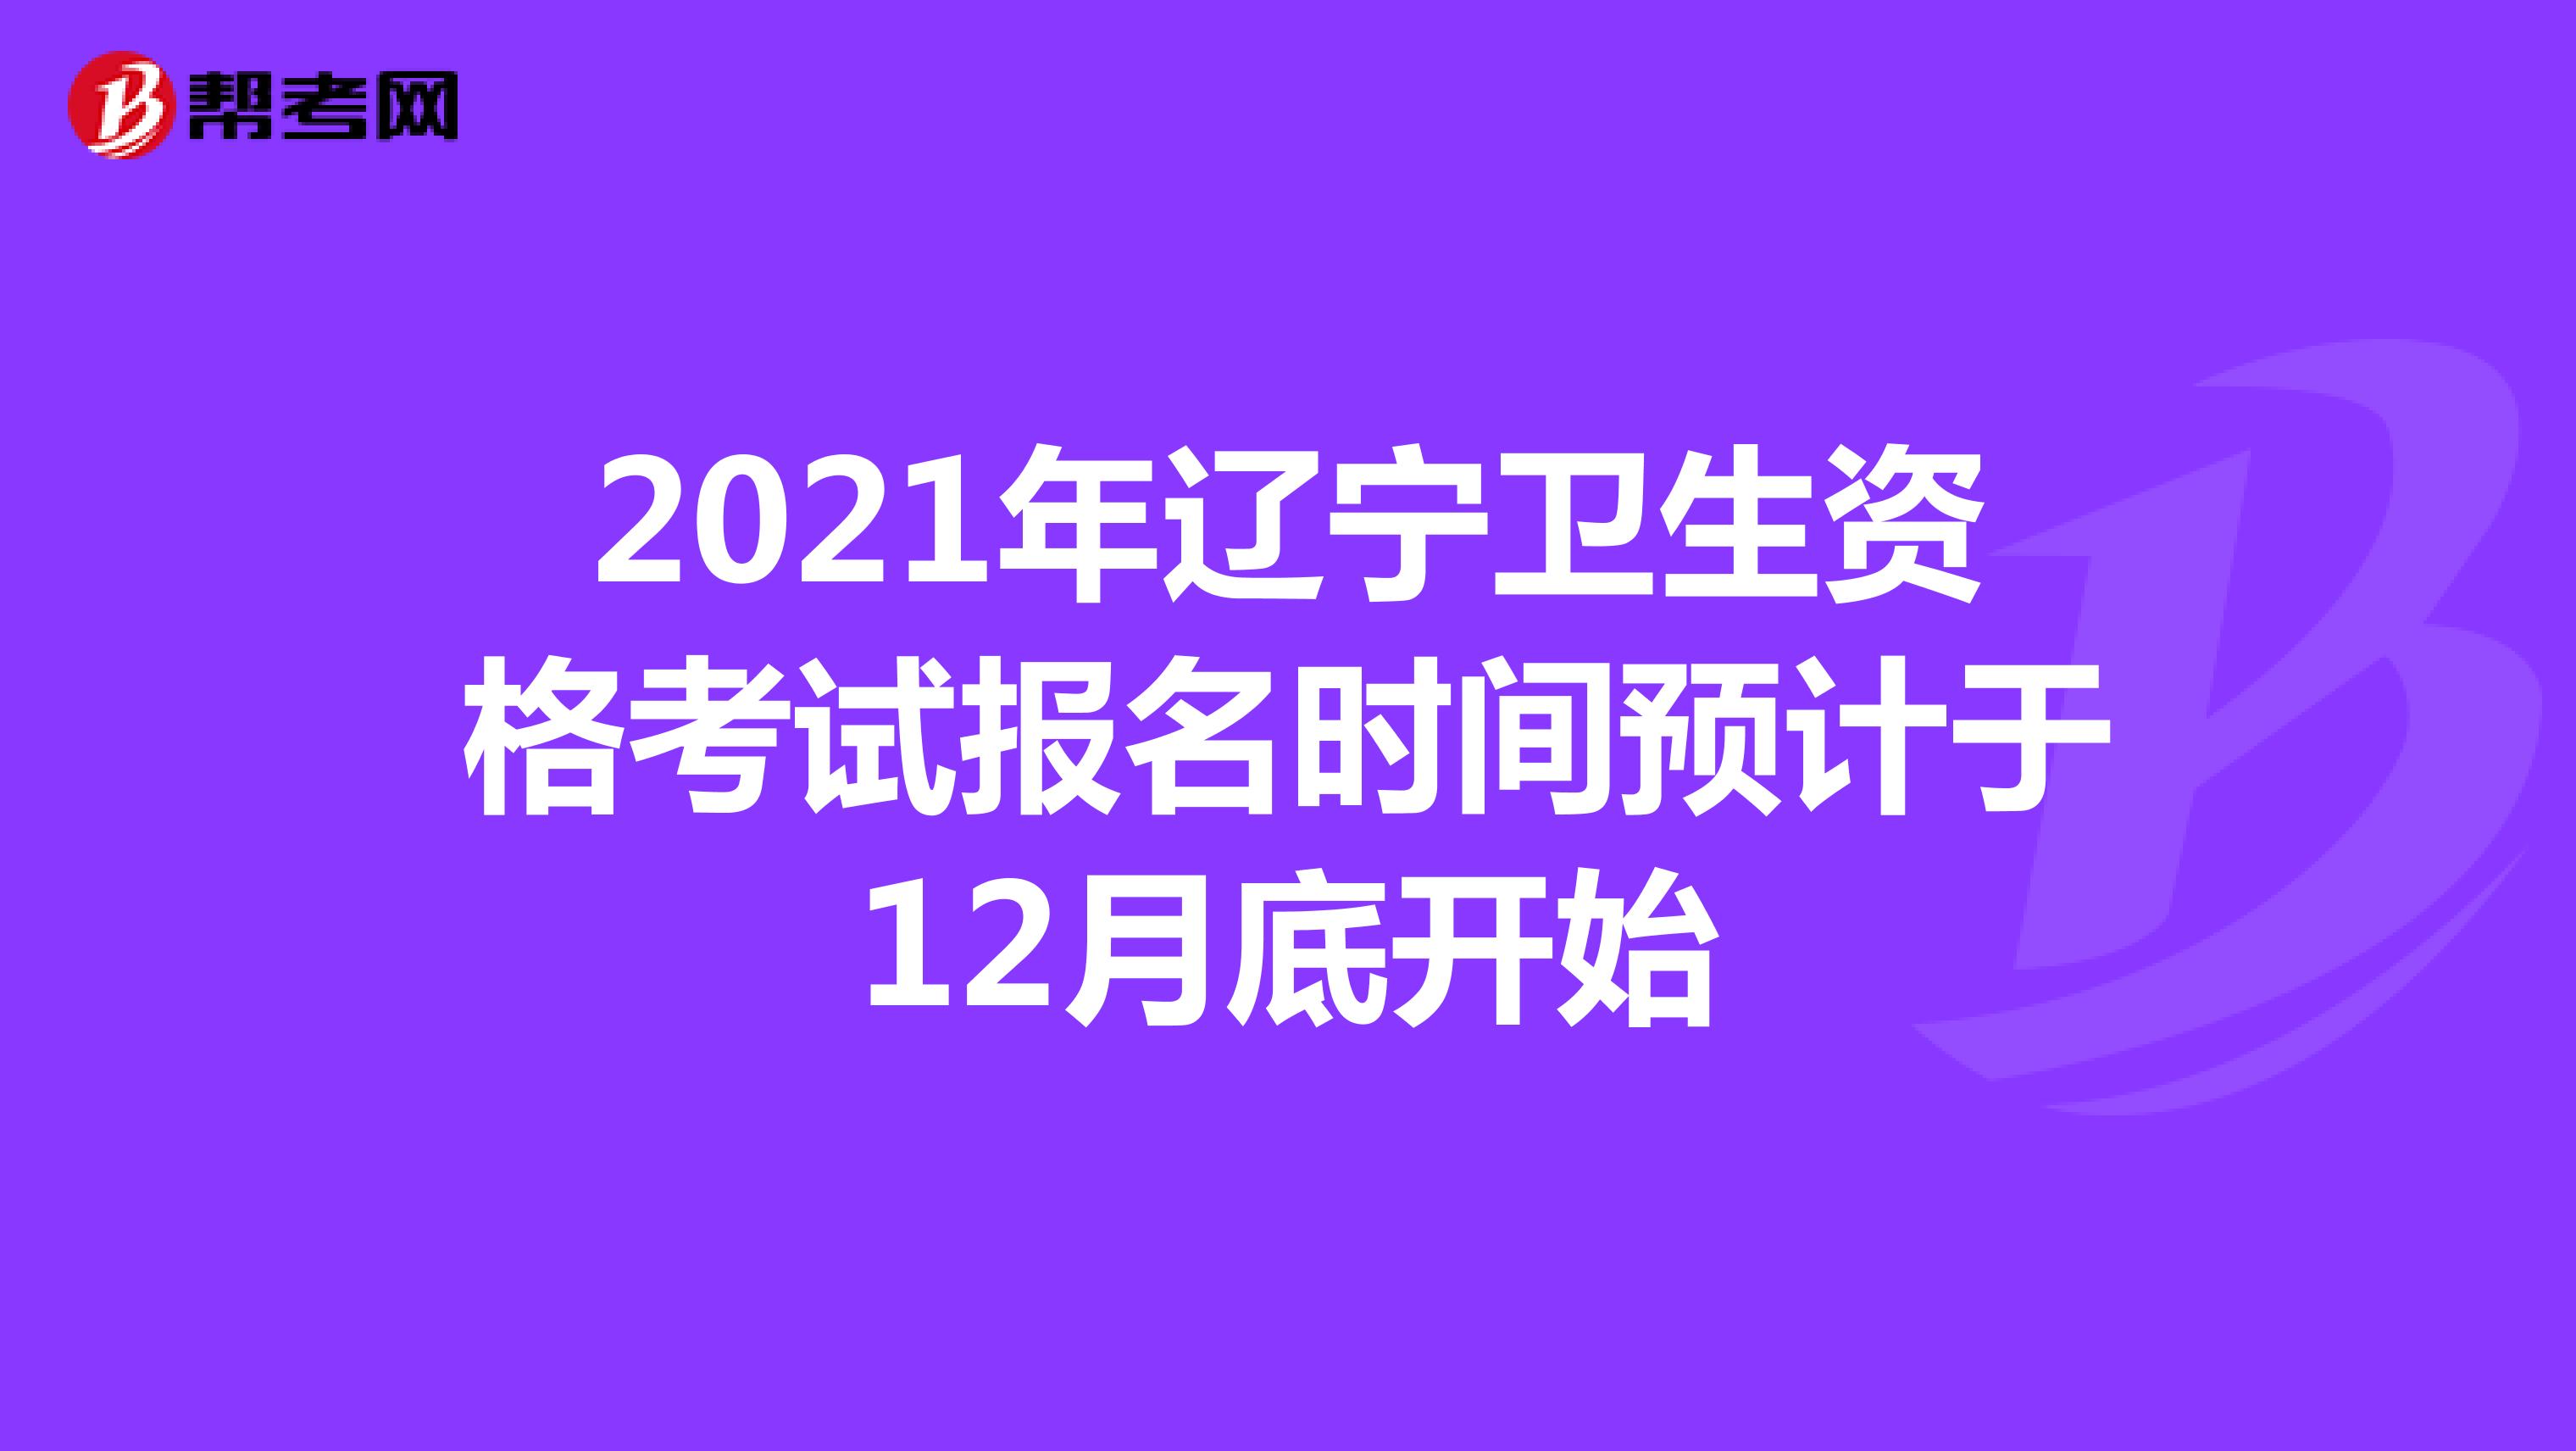 2021年辽宁卫生资格考试报名时间预计于12月底开始